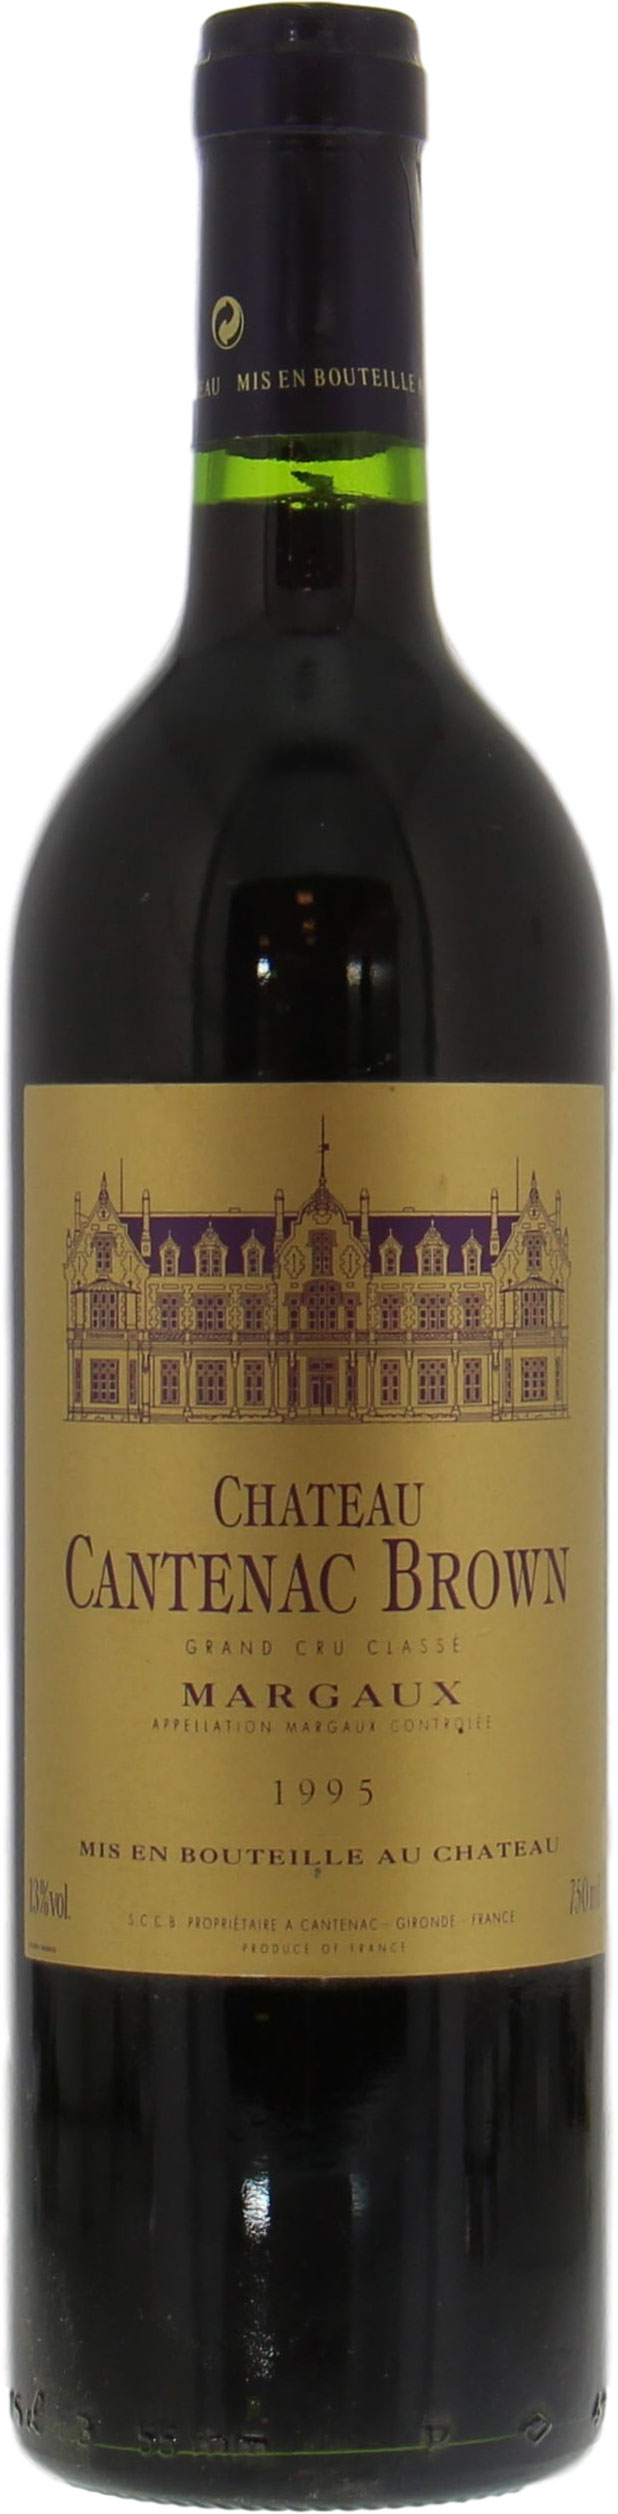 Chateau Cantenac Brown - Chateau Cantenac Brown 1995 Perfect